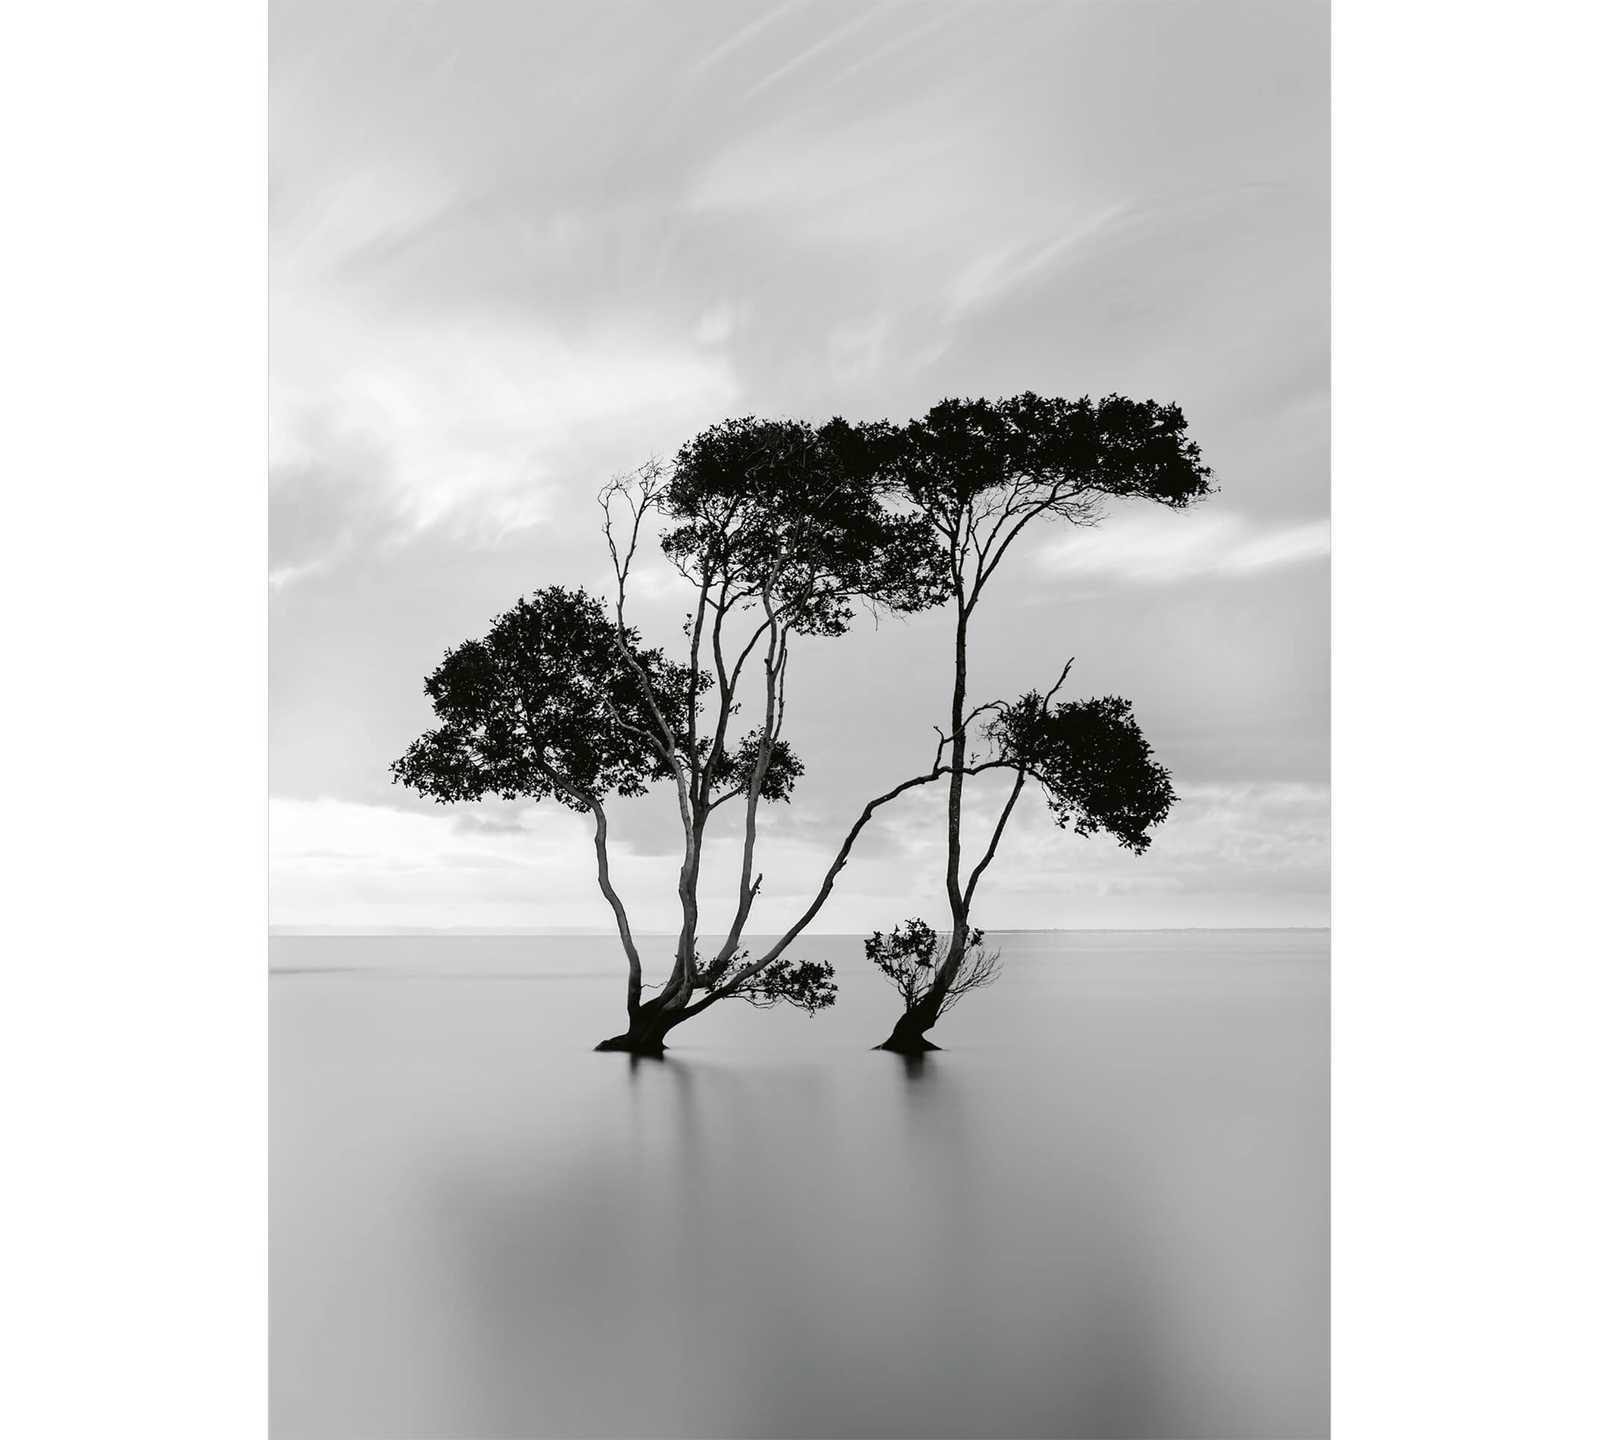         Fototapete ruhiges Gewässer mit Baum – Weiß, Schwarz
    